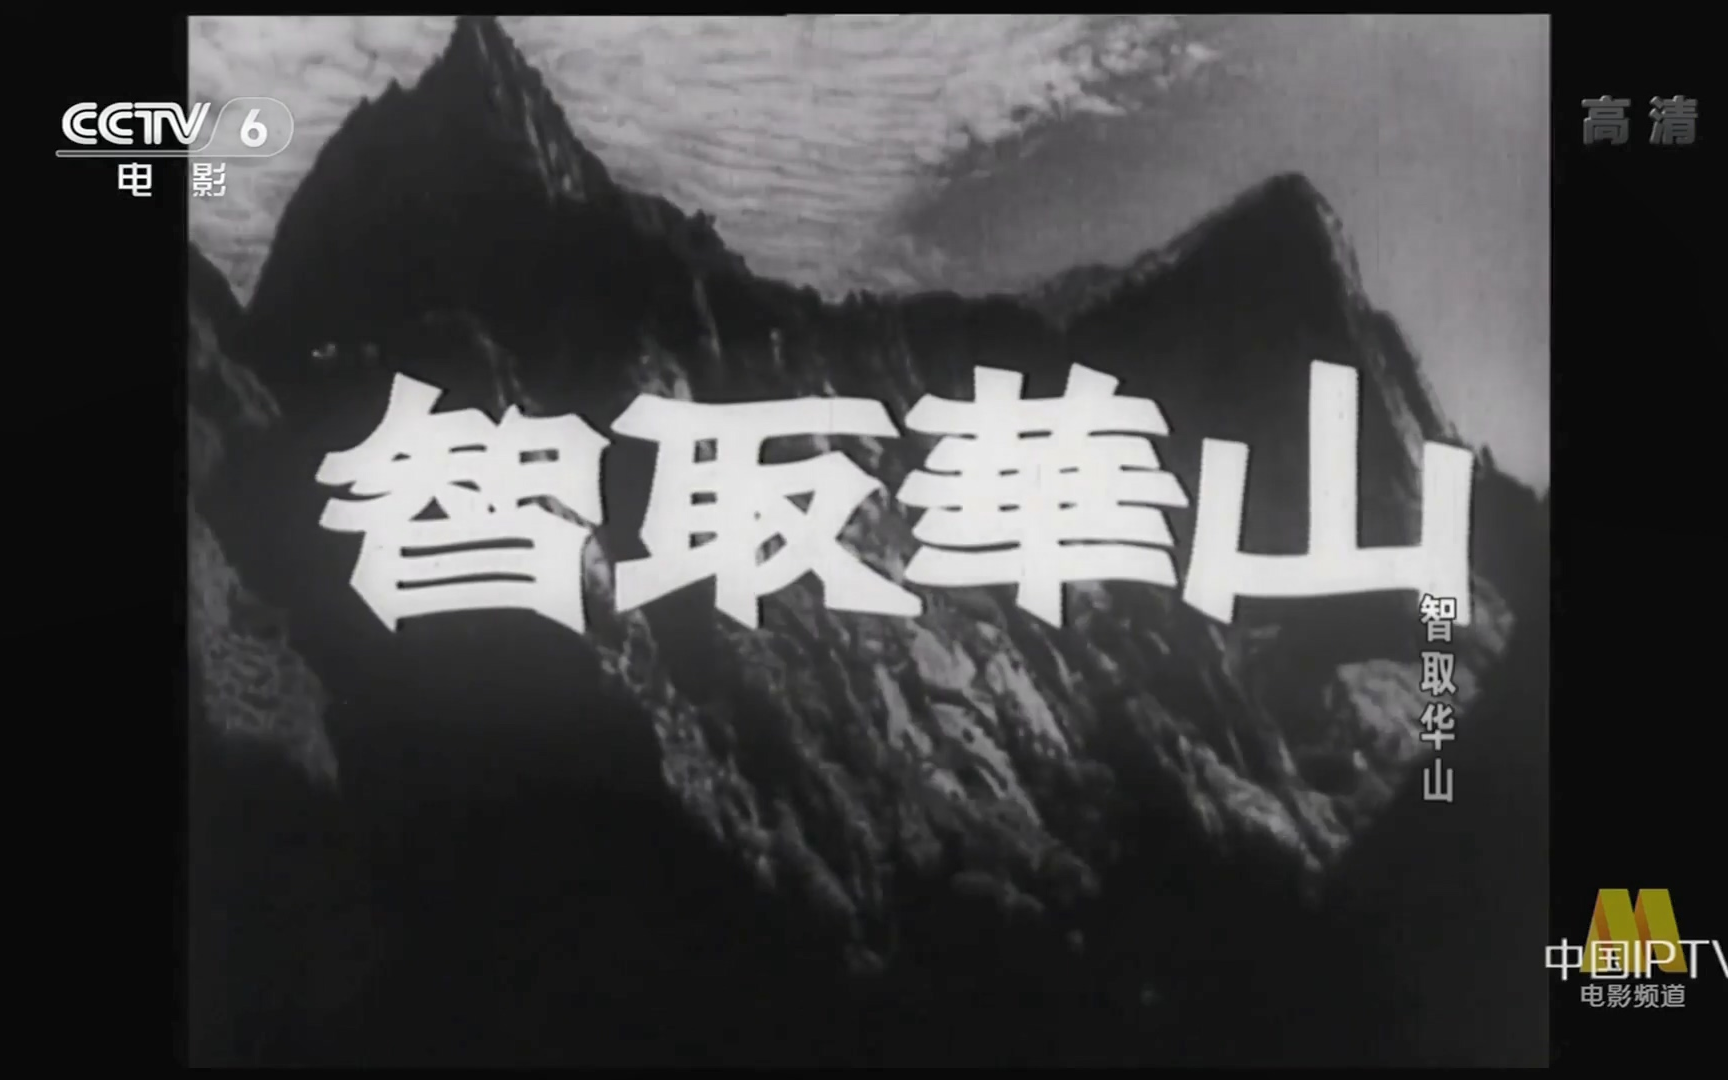 【剧情/战争】 智取华山 (1953)【cctv6高清】【1080p】